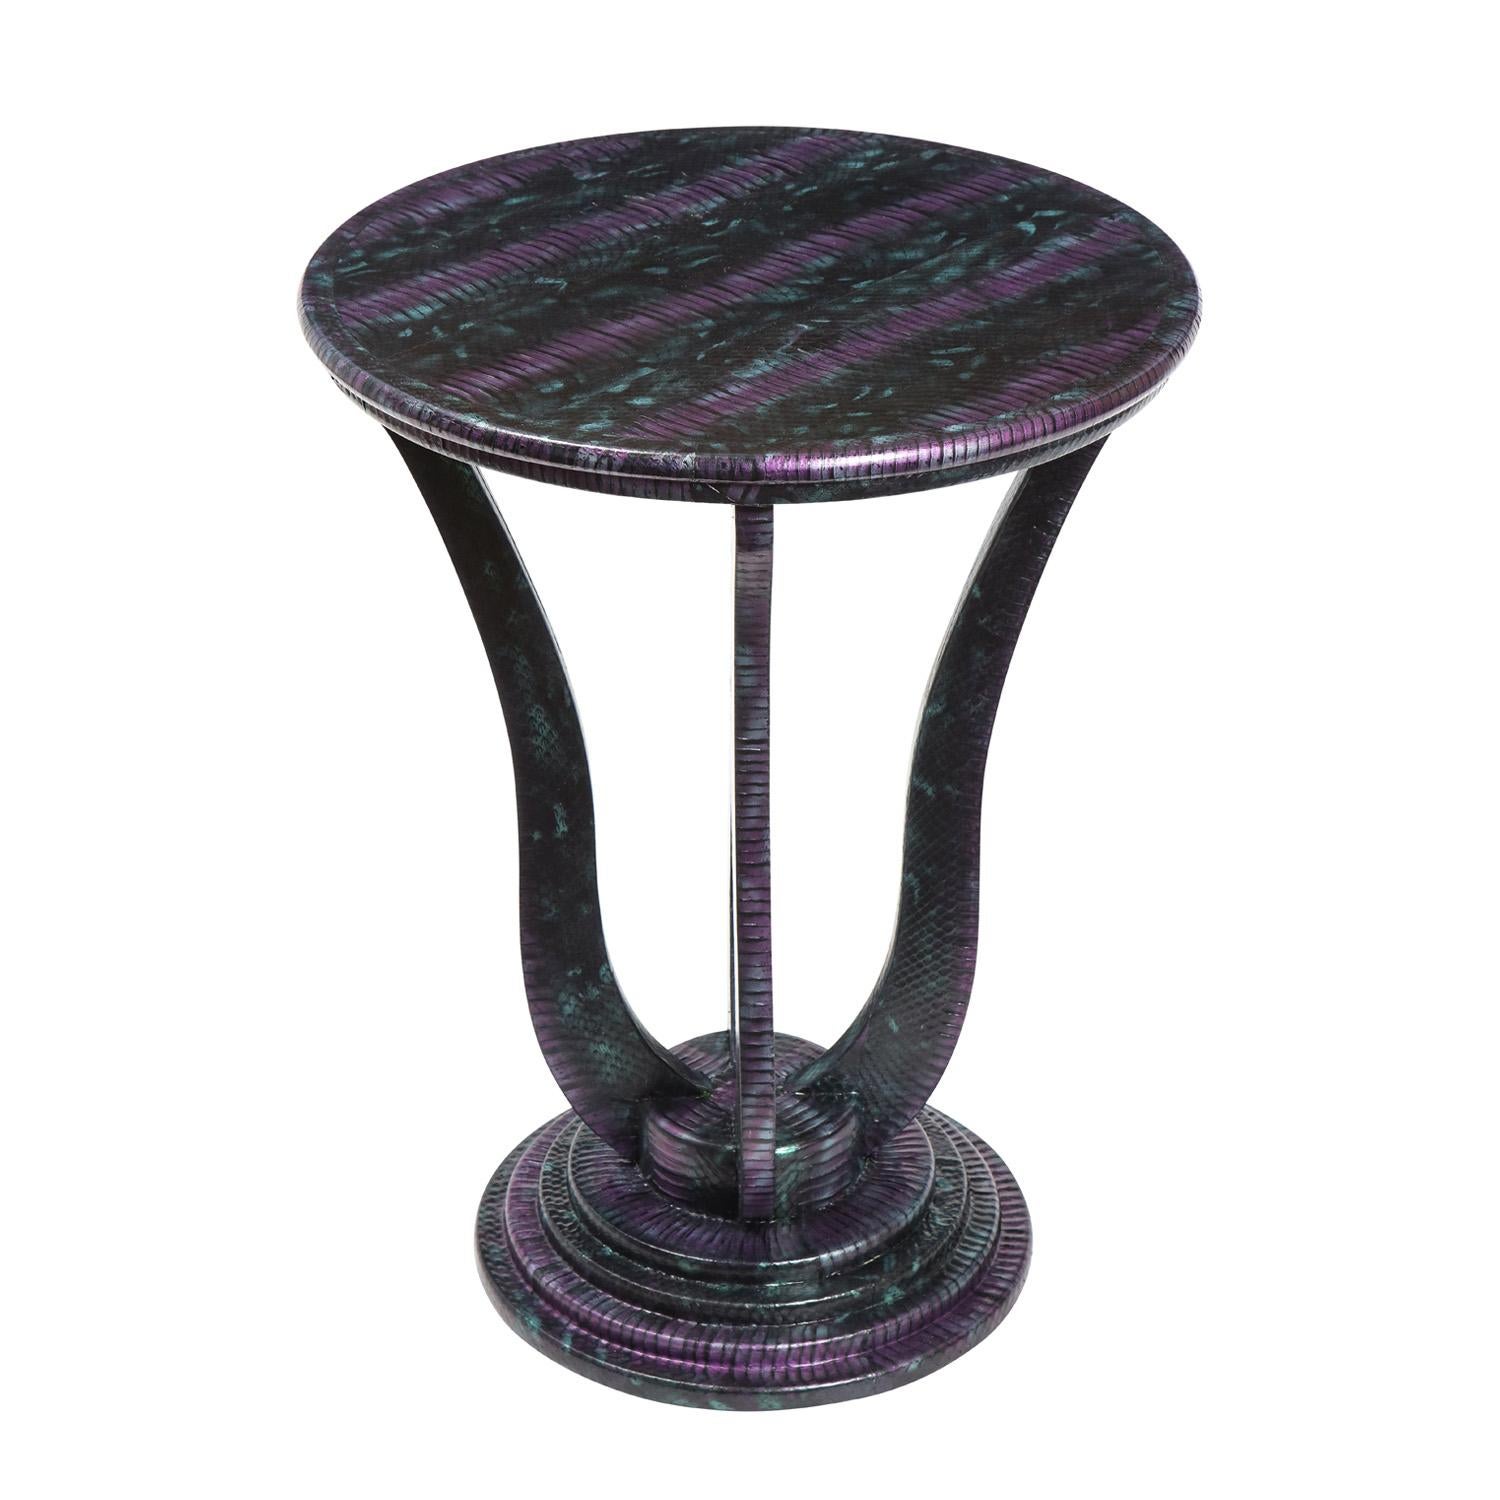 Table d'appoint ronde à base étagée et éléments verticaux incurvés en peau de serpent violette, noire et sarcelle, par Evan Lobel pour Lobel Originals, American 2021. Les couleurs de cette table sont exquises et l'artisanat est exceptionnel.